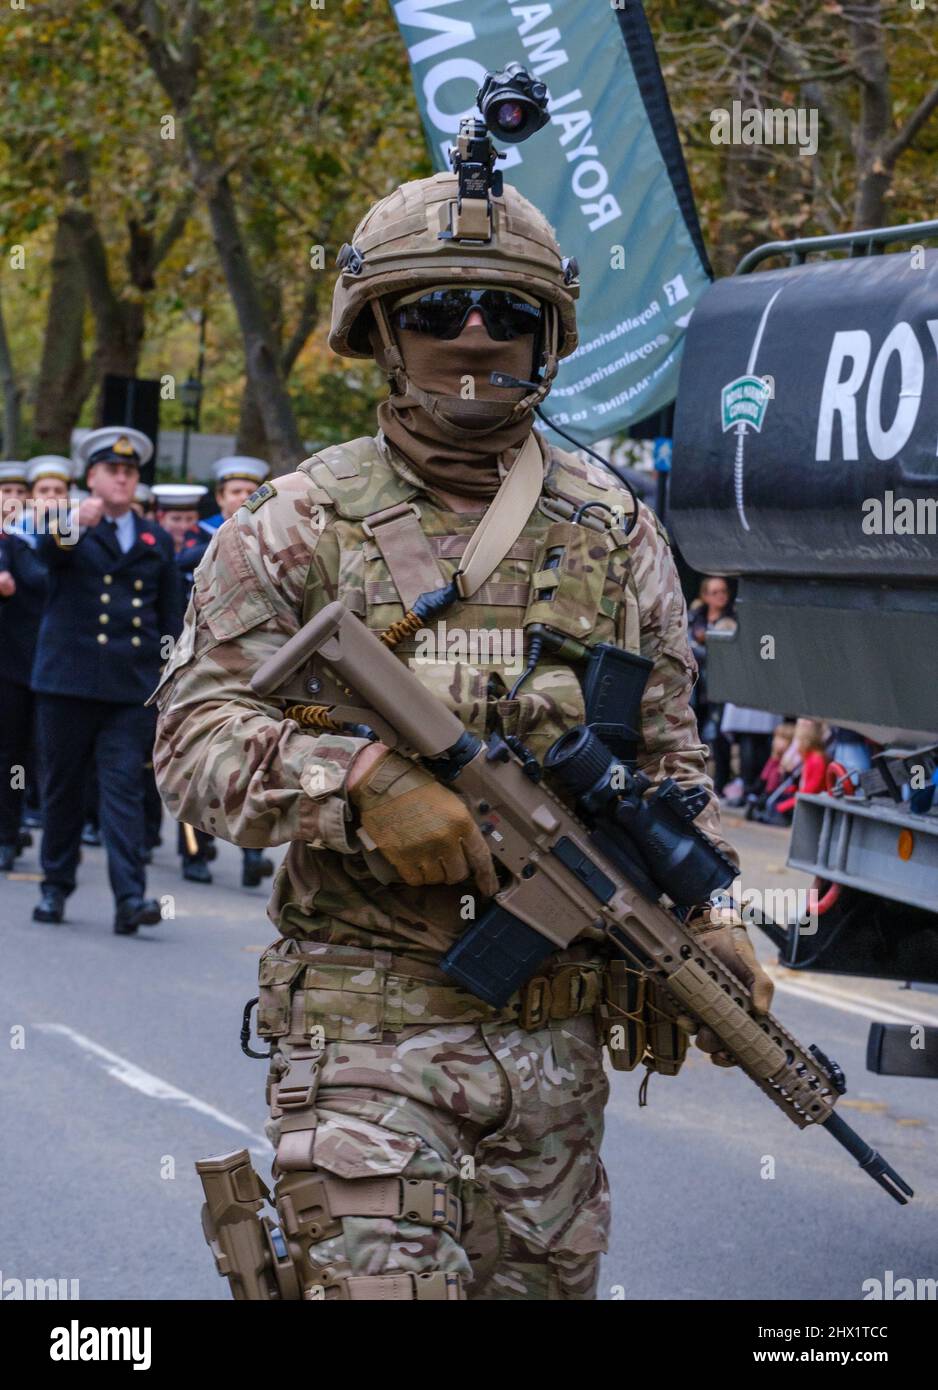 Auf der Lord Mayor’s Show 2021, Victoria Embankment, London, England, Großbritannien, marschiert ein Kommando des Royal Marines Reserve in voller Kampfausrüstung. Stockfoto